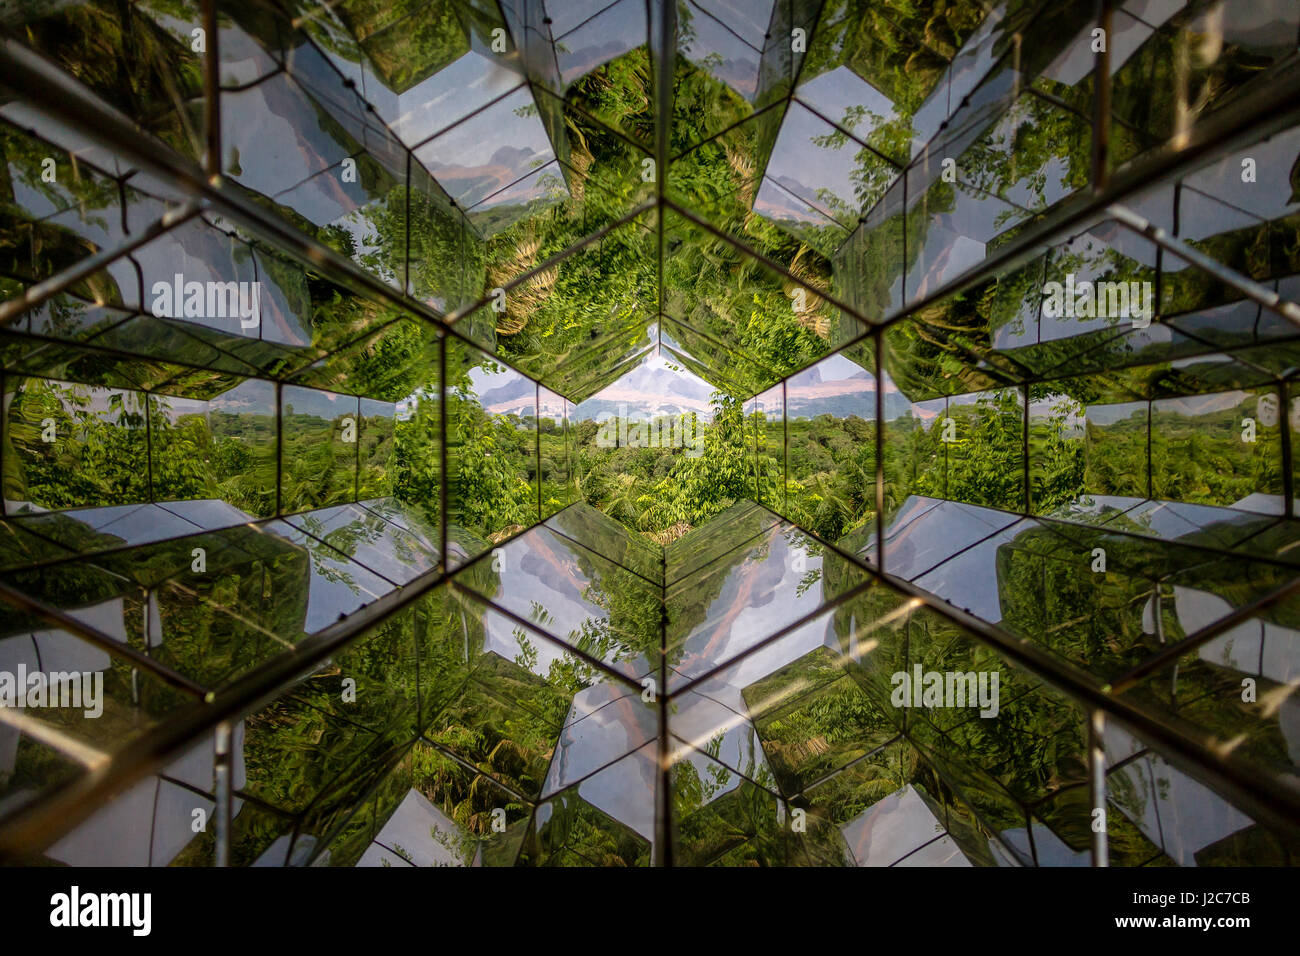 Kaleidoskop-Ansicht anzeigen Maschine von Olafur Eliasson an Inhotim Public Museum für zeitgenössische Kunst - Brumadinho, Minas Gerais, Brasilien Stockfoto